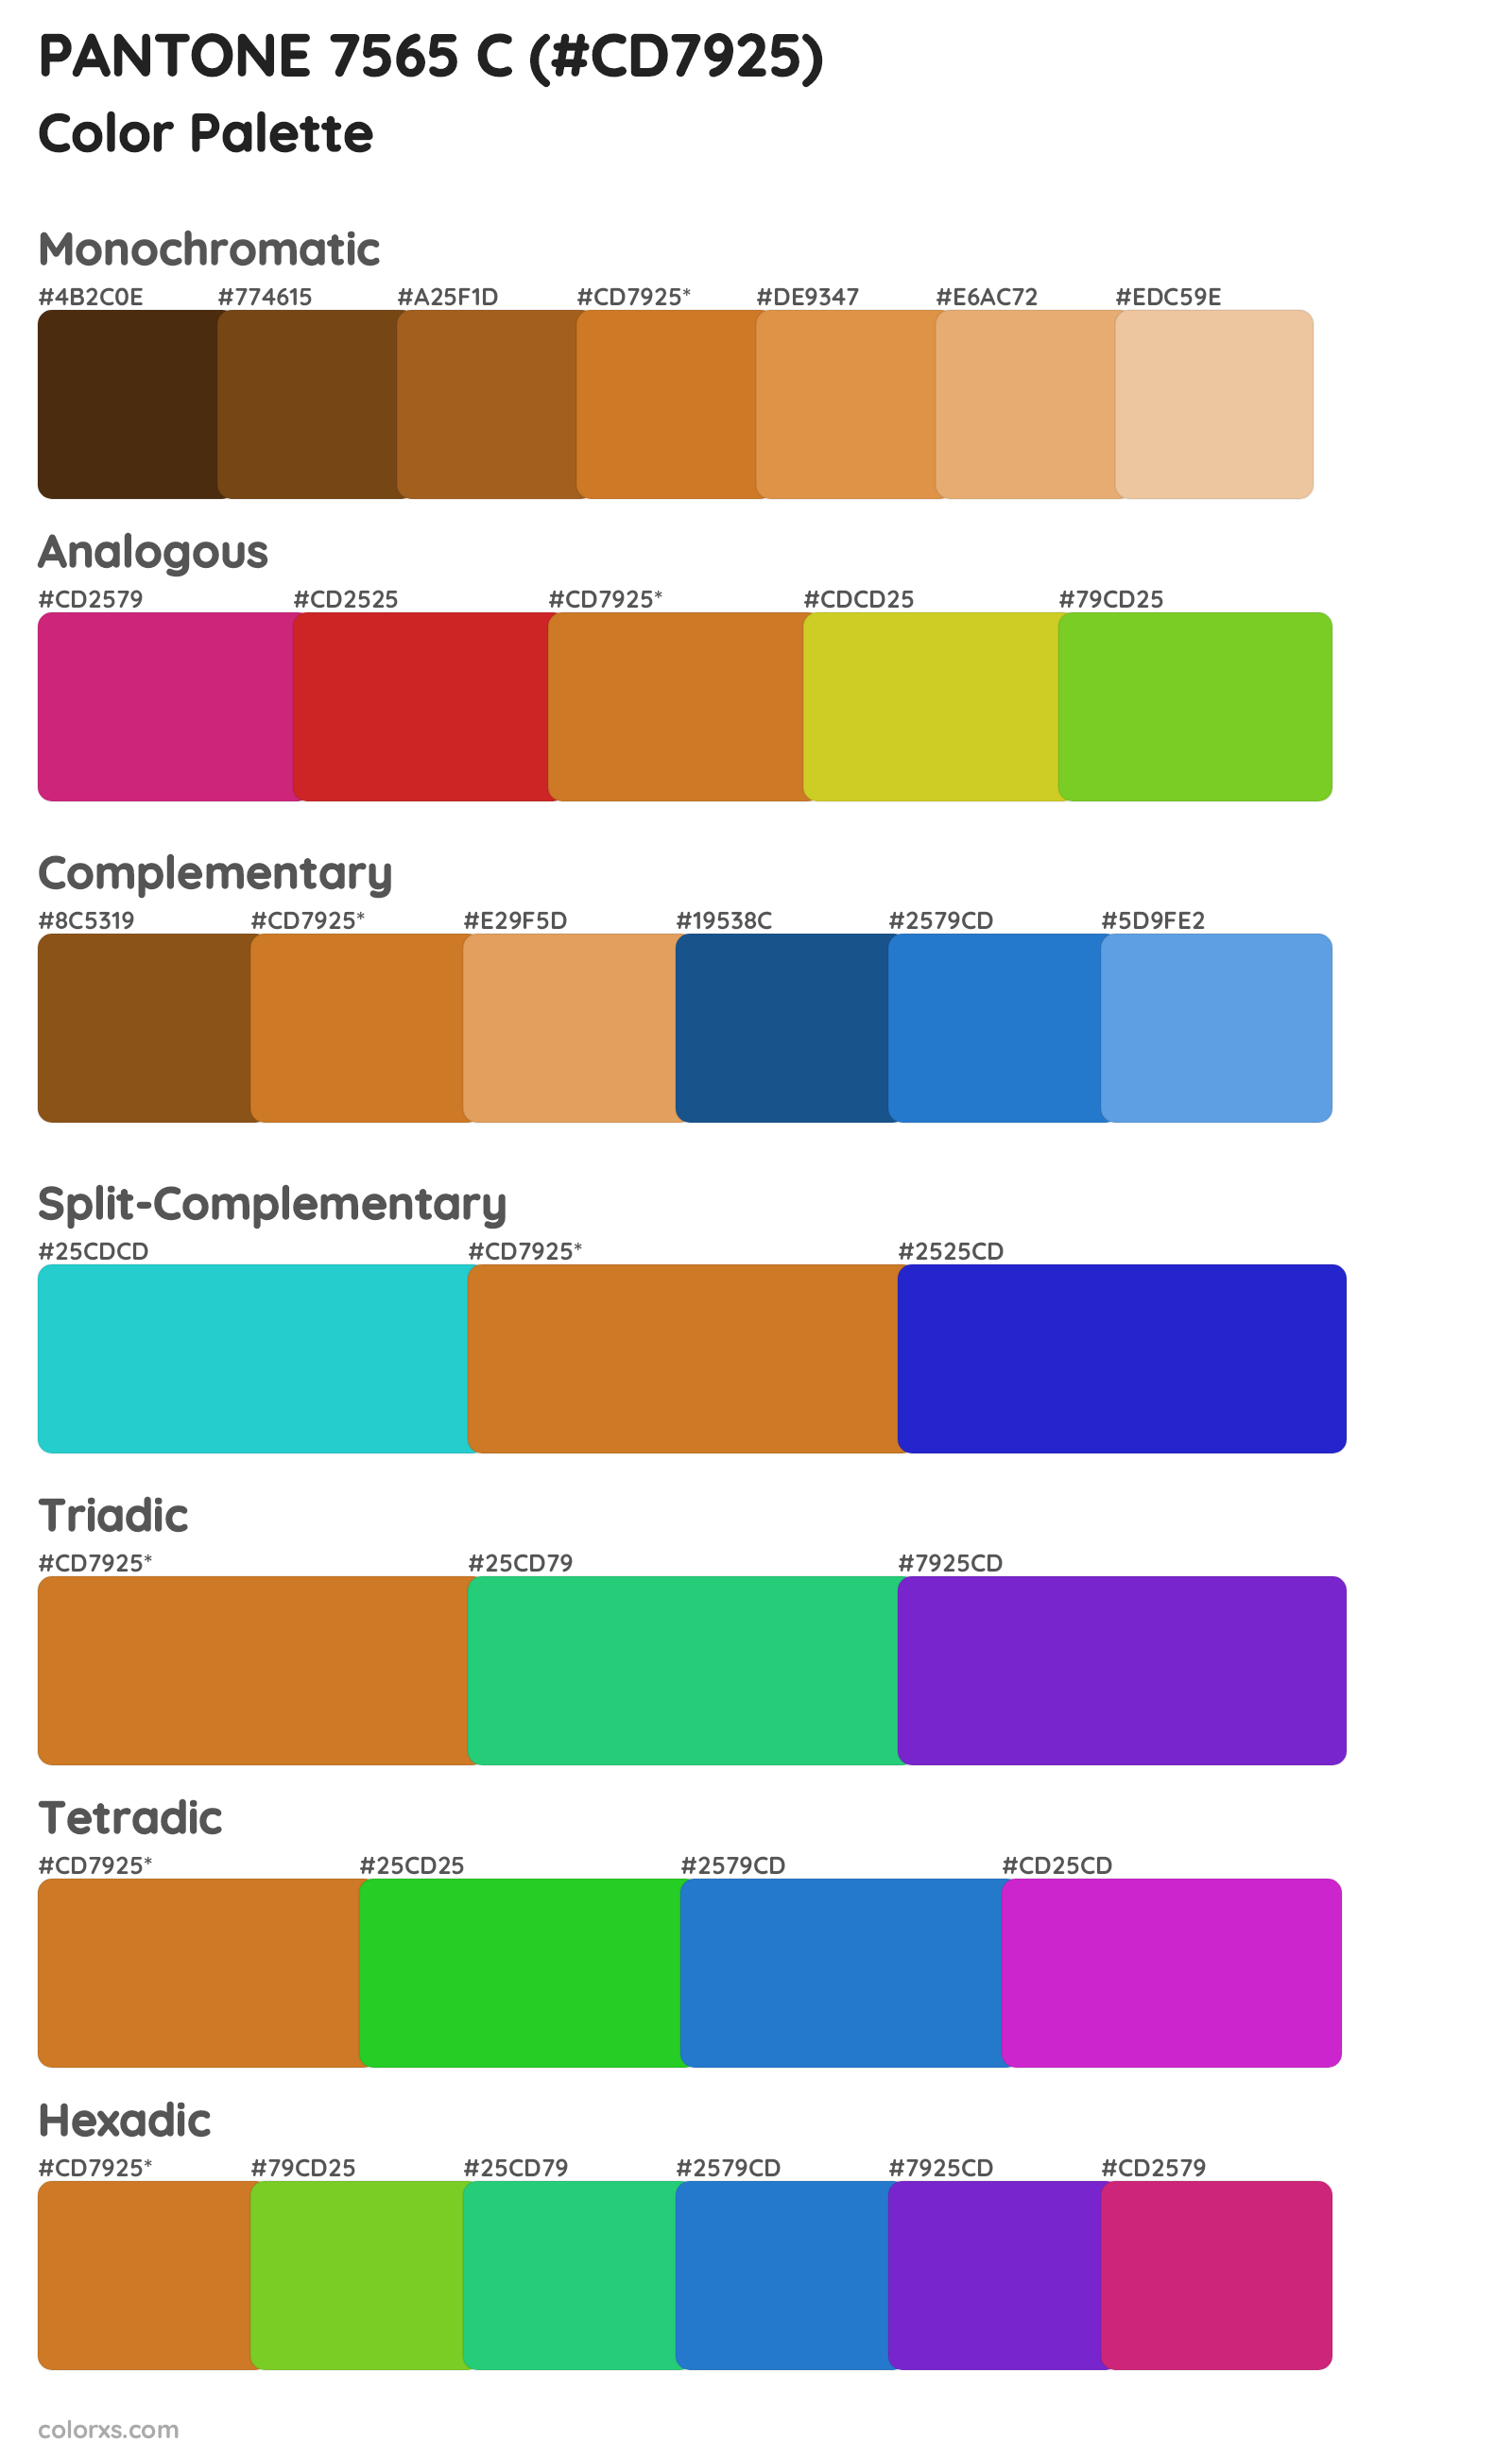 PANTONE 7565 C Color Scheme Palettes